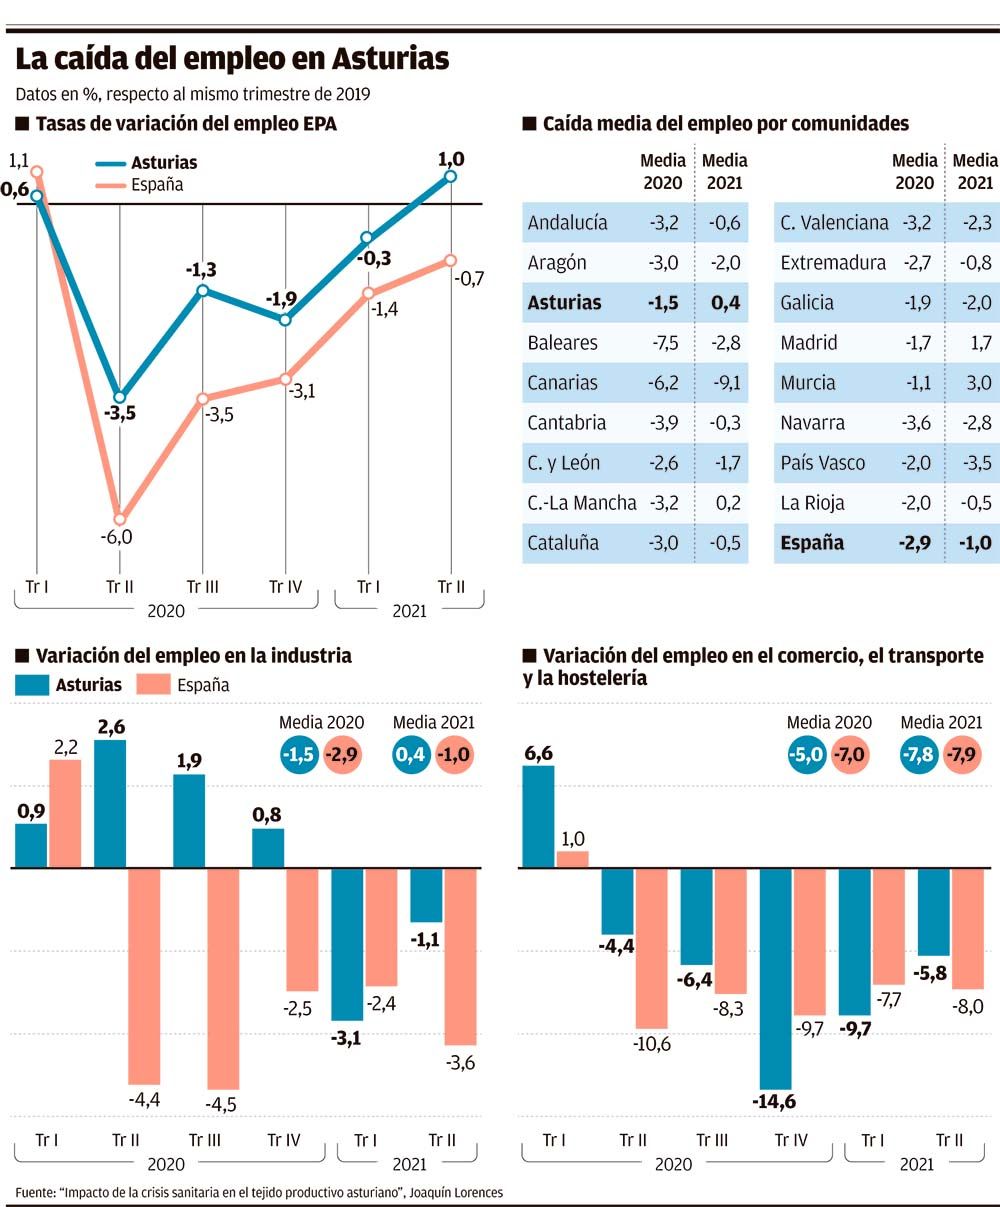 La caída del empleo en Asturias